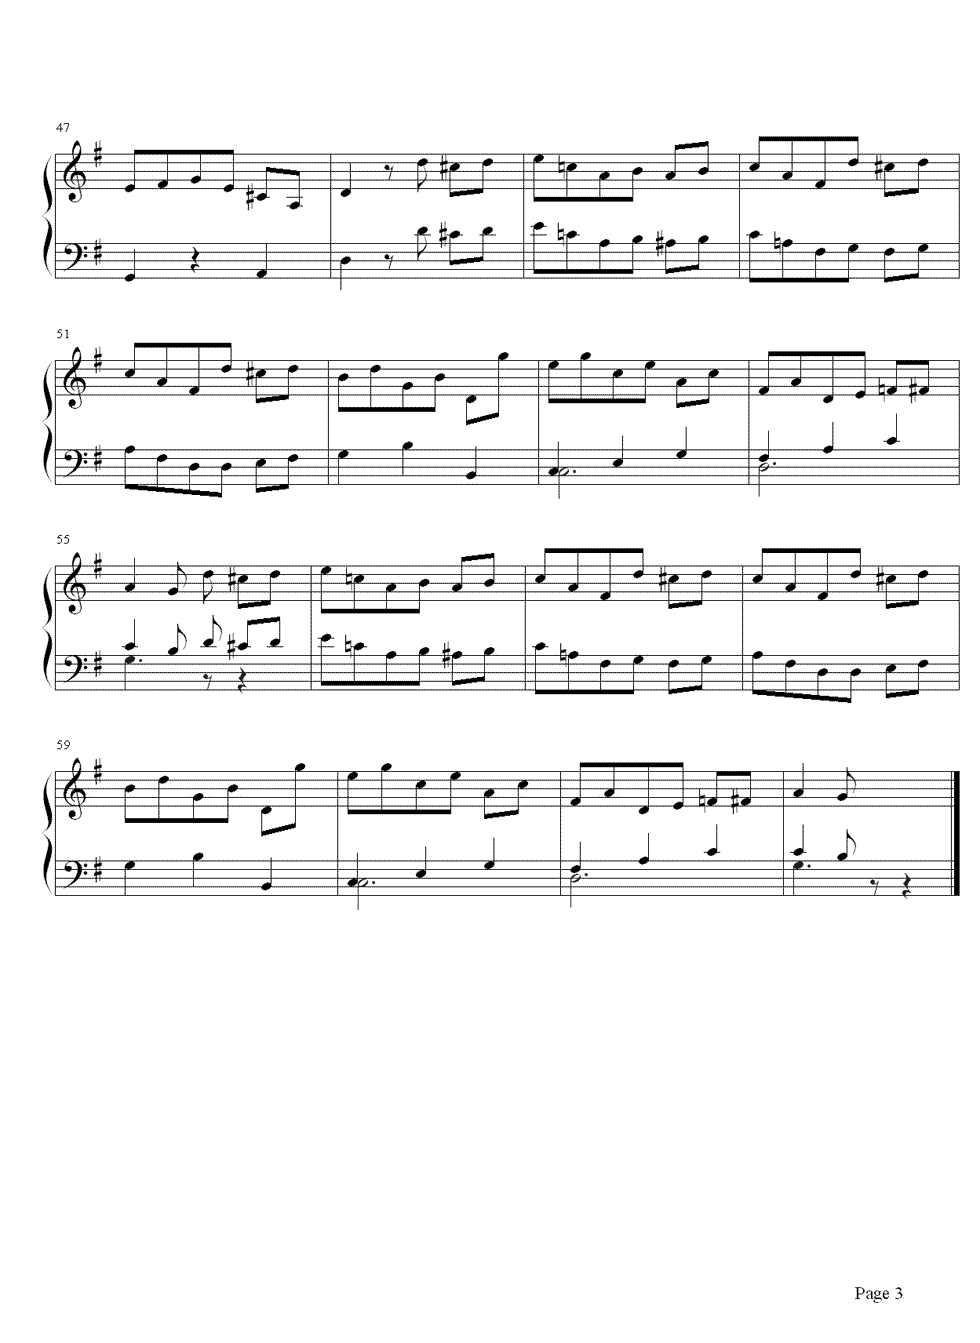 小步舞曲钢琴谱 贝多芬众多小步舞曲中最著名的作品3